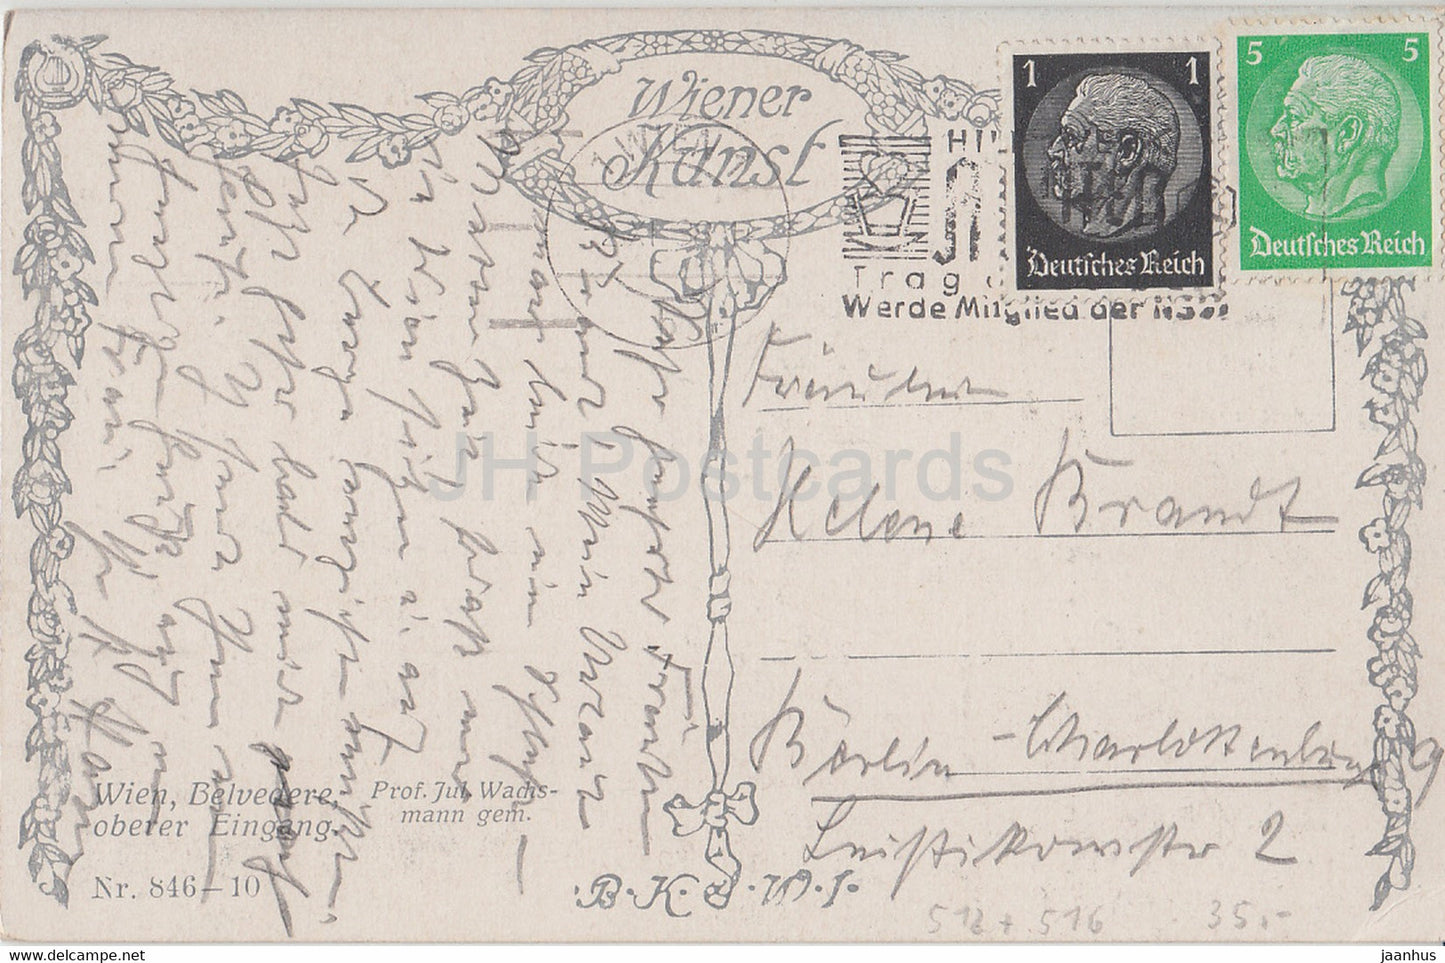 Wien - Belvédère - Oberer Eingang - illustration de J. Wachsmann - 846 - carte postale ancienne - Autriche - d'occasion